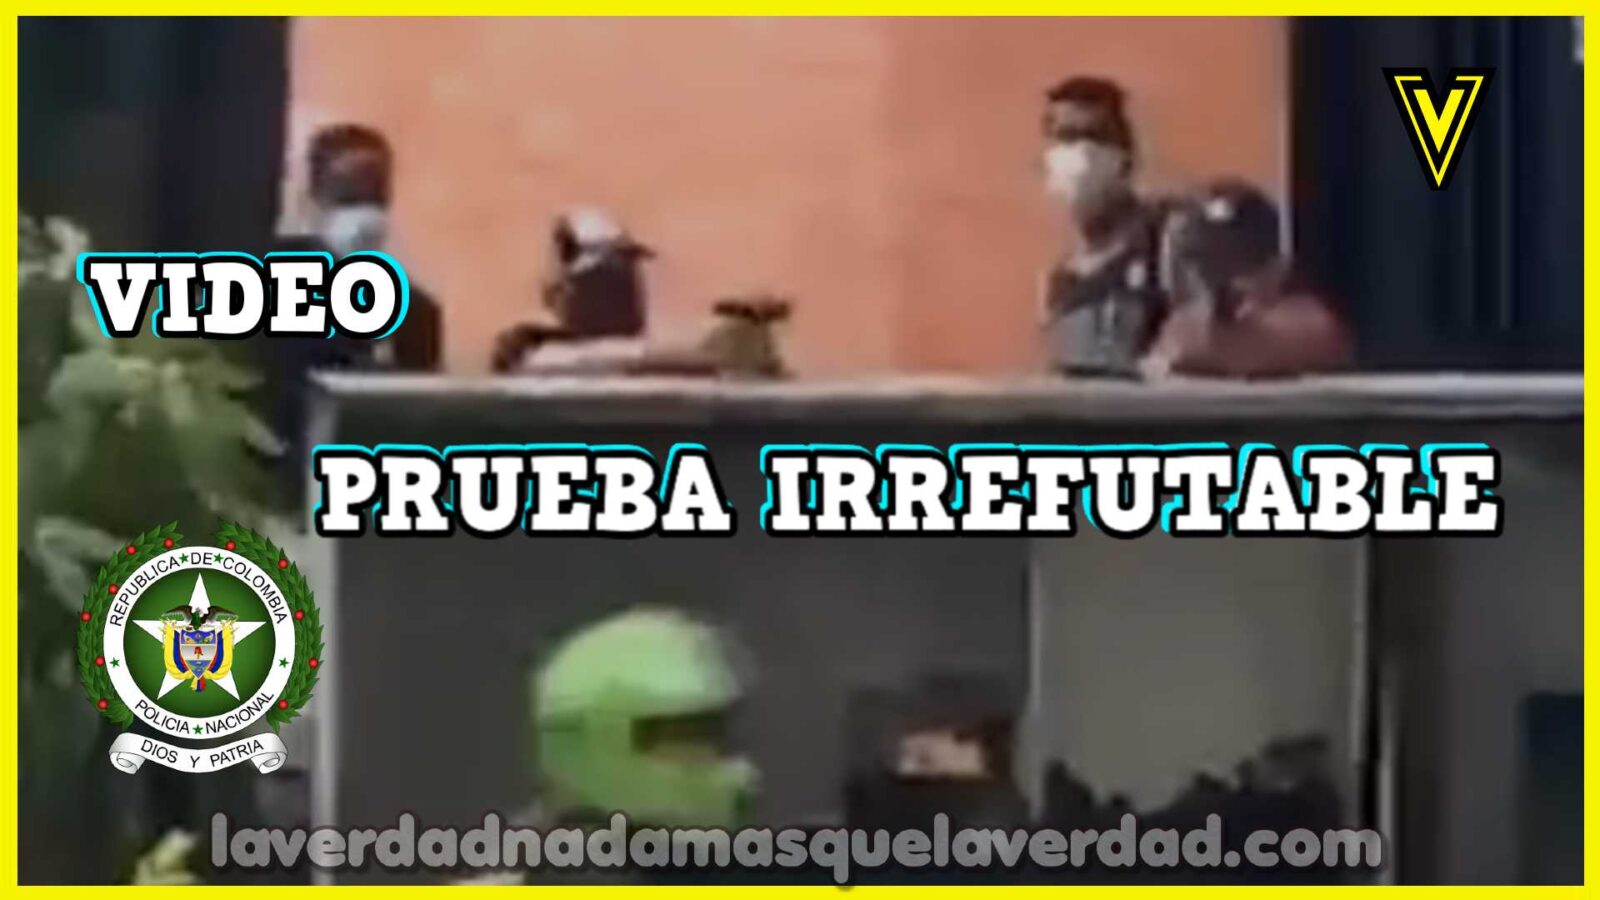 POLICIA DE COLOMBIA ASESINA EN VIDEO